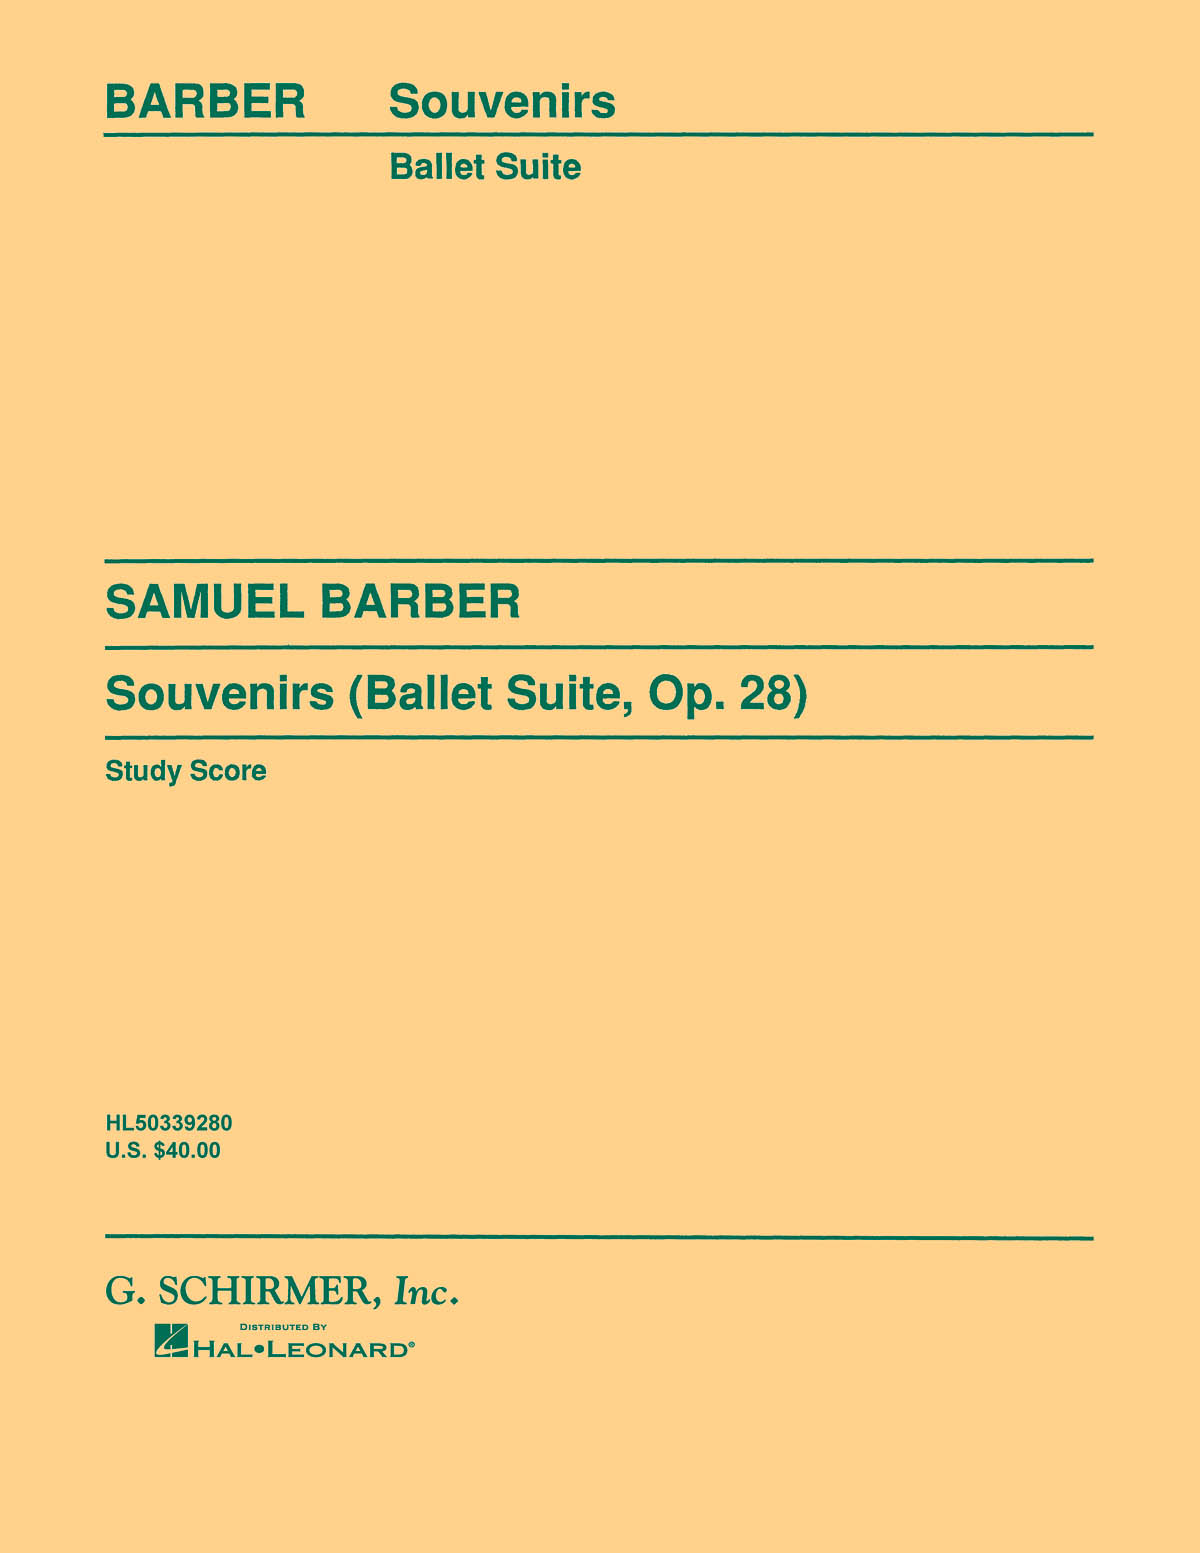 Samuel Barber: Souvenirs Ballet Suite  Op. 28 (Original): Orchestra: Study Score